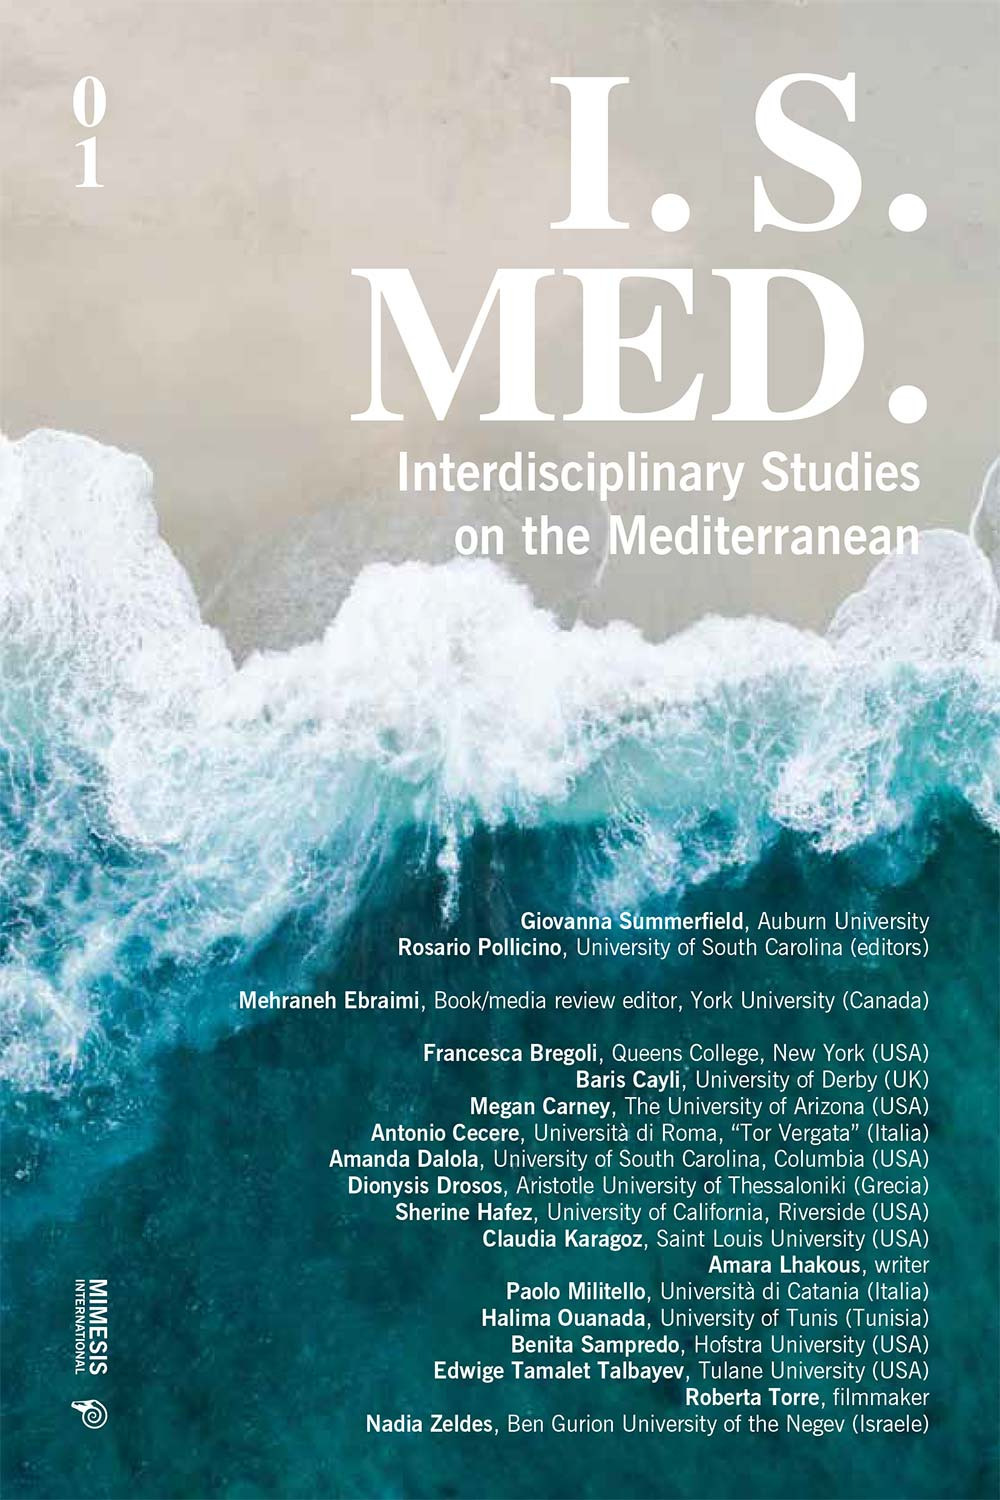 I. S. Med. Interdisciplinary studies on the Mediterranean. Vol. 1